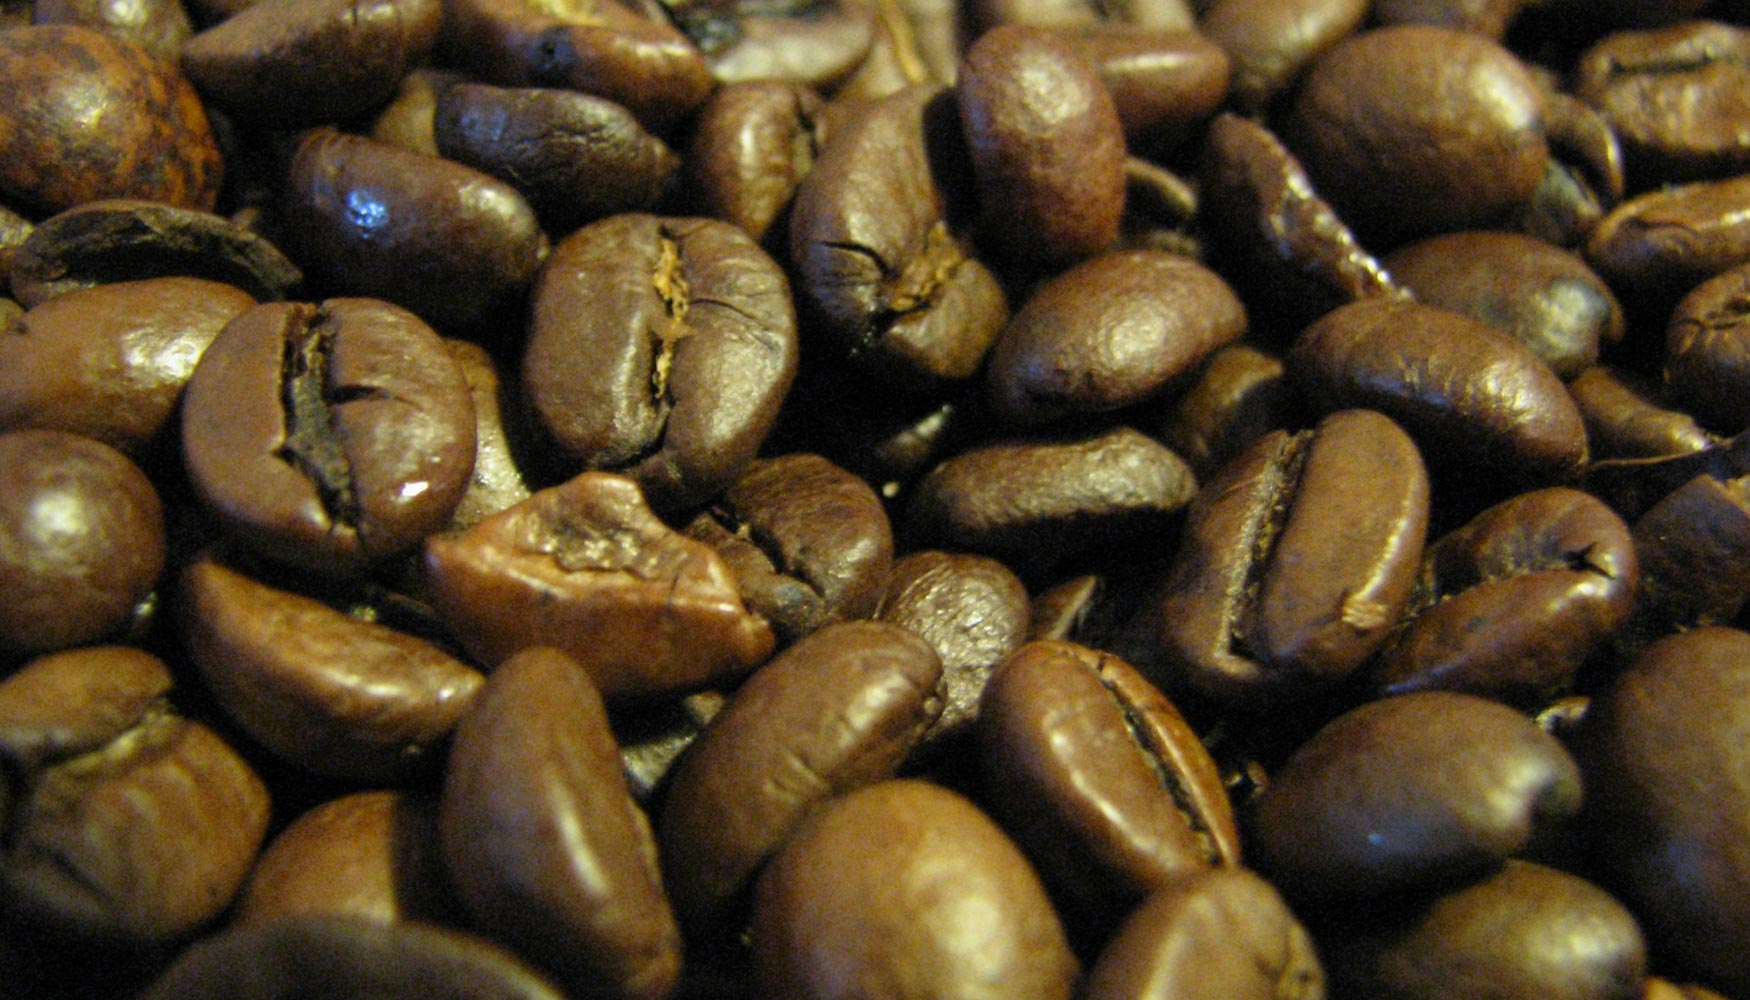 El estudio confirma la presencia de fumonisinas, aflatoxinas, tricotecenos y micotoxinas emergentes en el caf